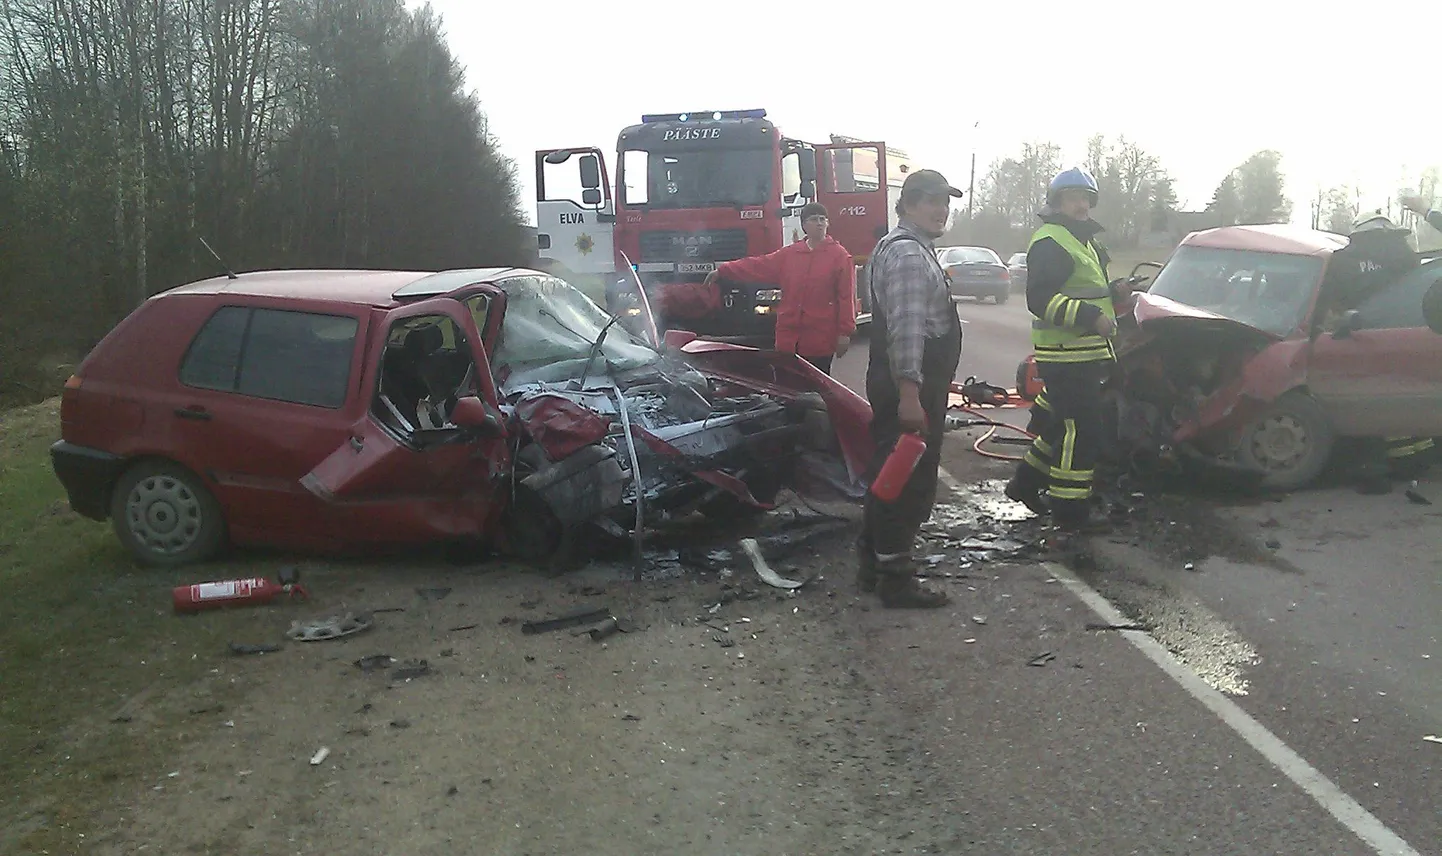 Nõo lähedal Tartu-Valga maanteel 27. aprillil juhtunud liiklusõnnetus.